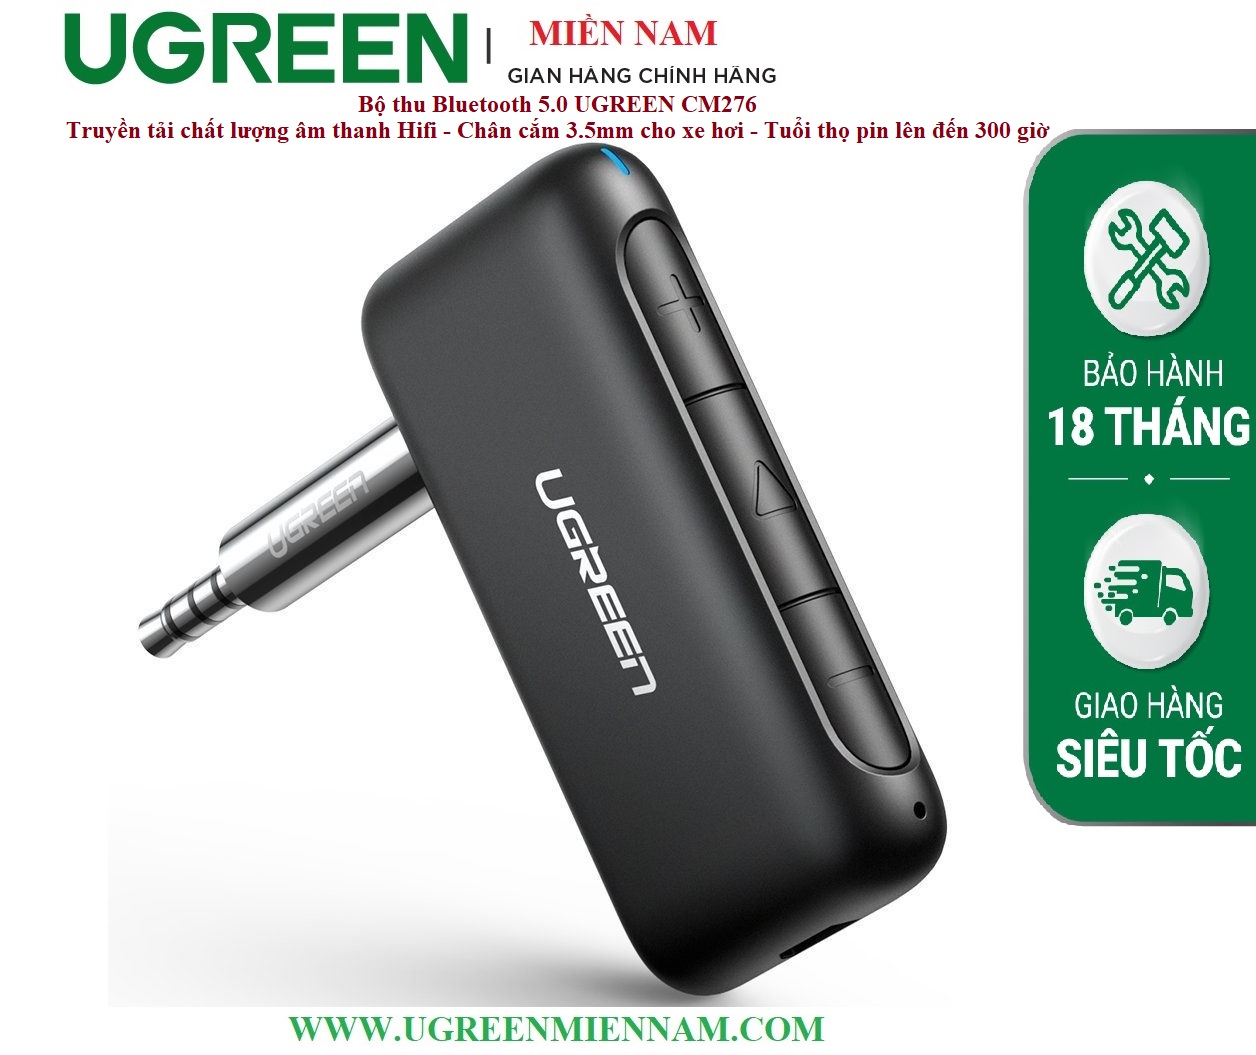 Bộ thu Bluetooth 5.0 UGREEN CM276 - Truyền tải chất lượng âm thanh Hifi - Chân cắm 3.5mm cho xe hơi - Tuổi thọ pin lên đến 300 giờ – Ugreen Miền Nam